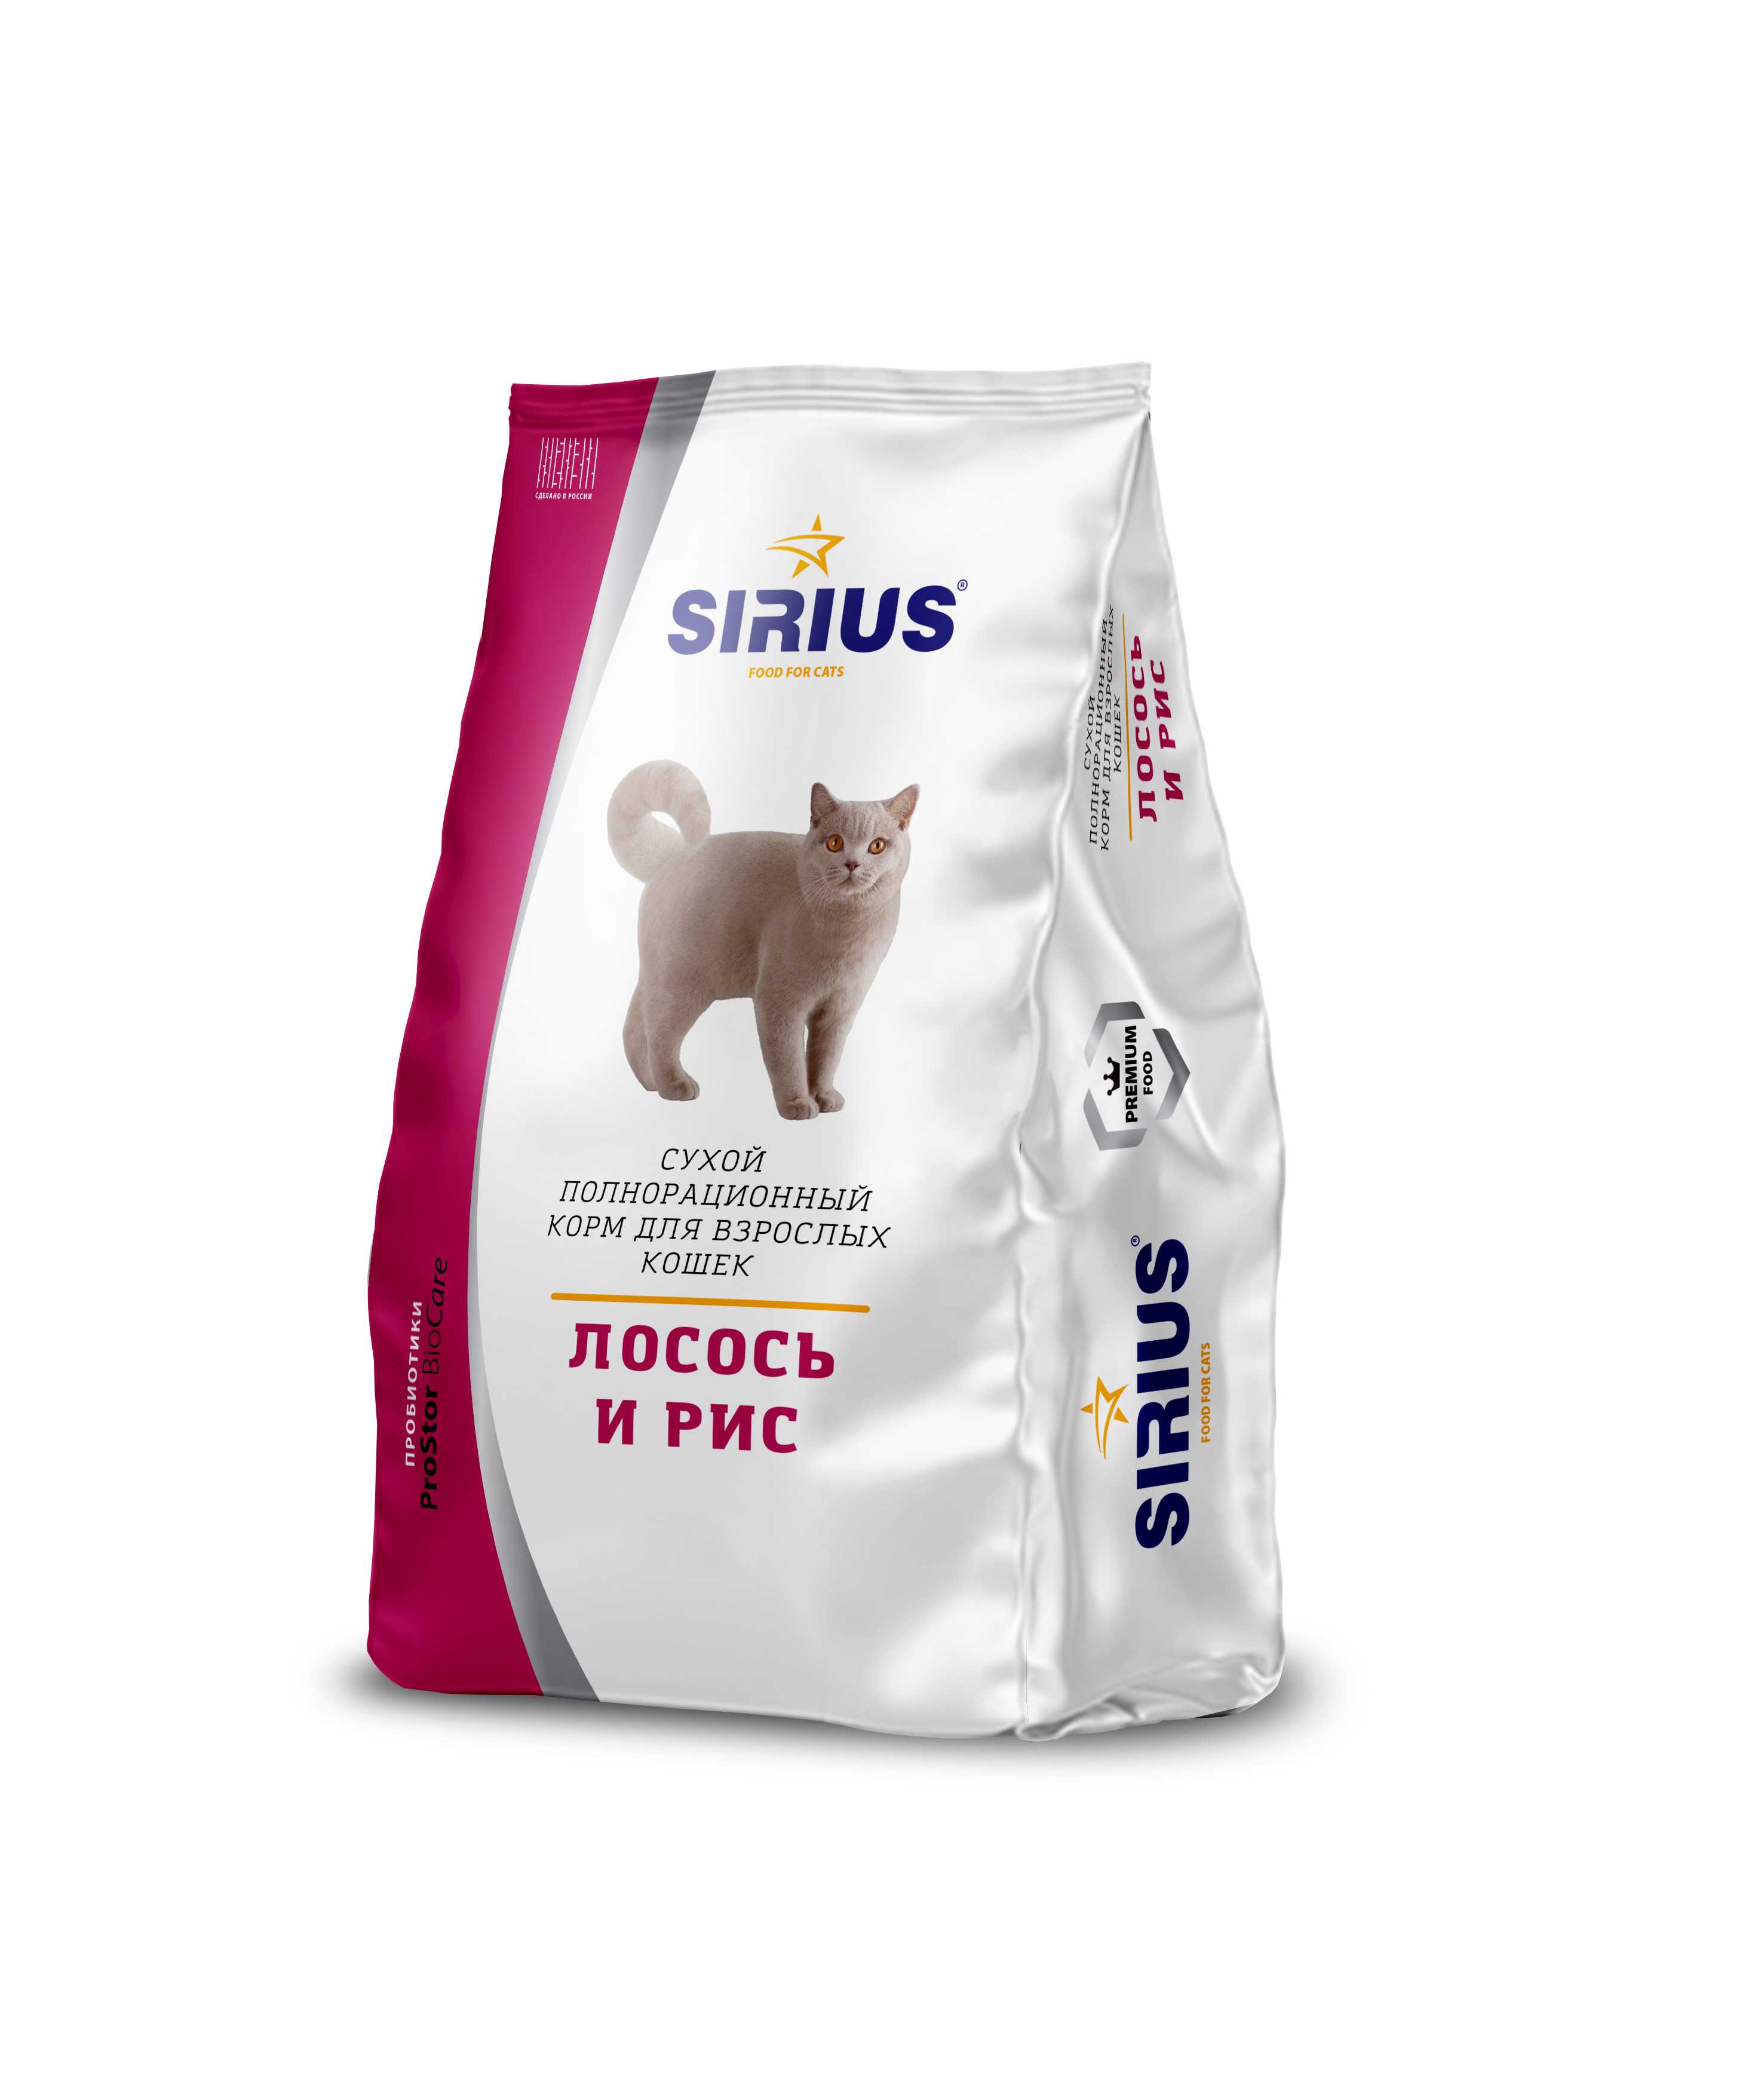 Сириус корм для кошек 10 кг. Сухой корм для кошек Sirius лосось, с рисом 400 г. Sirius корм для кошек премиум. 'Сириус сухой полнорационный корм для взрослых кошек, лосось и рис. Купить сириус для кошек 10